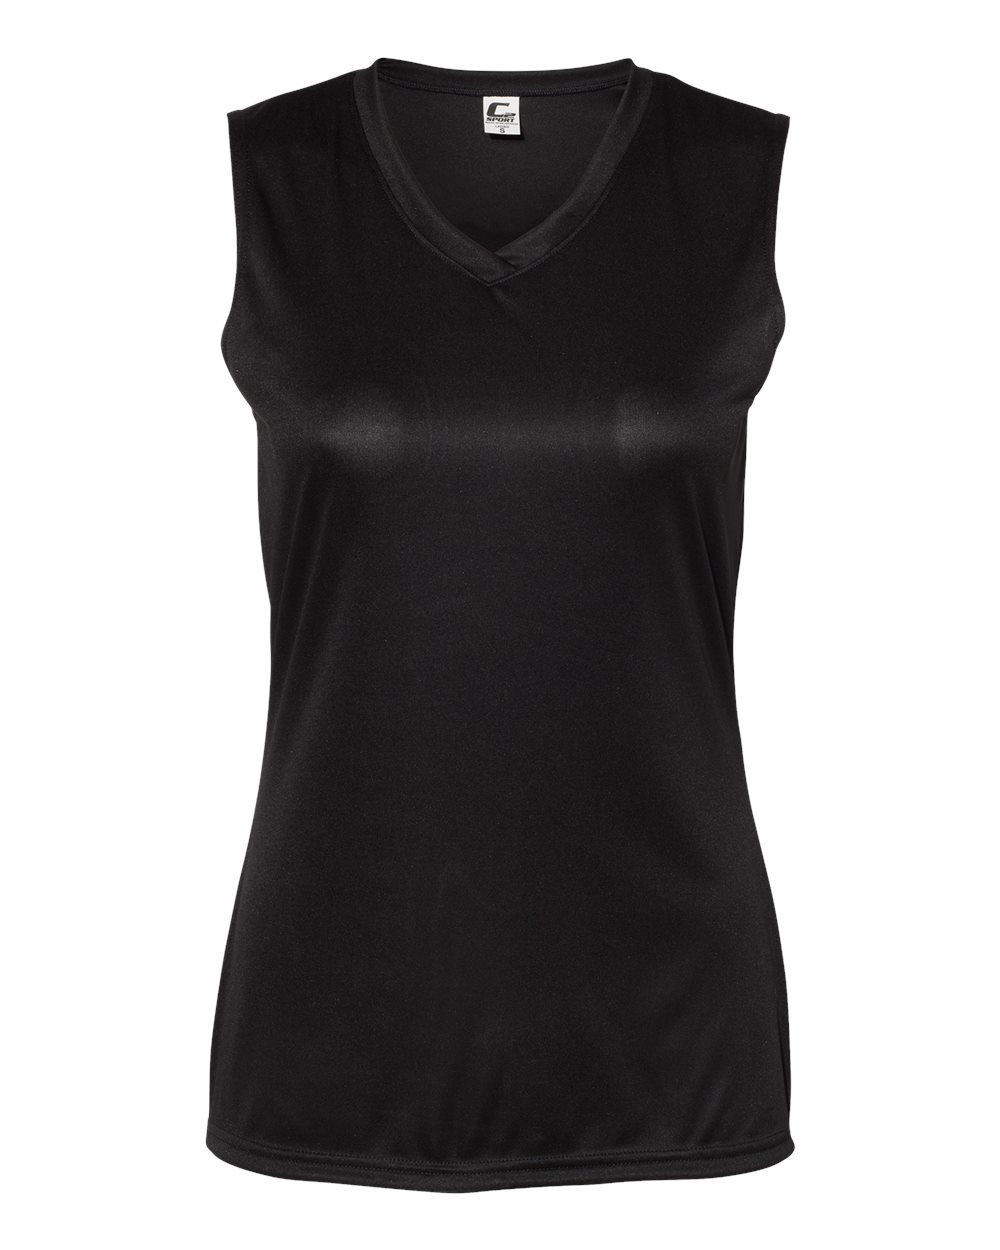 C2 Sport 5663 Women's Sleeveless V-Neck T-Shirt - Black, L